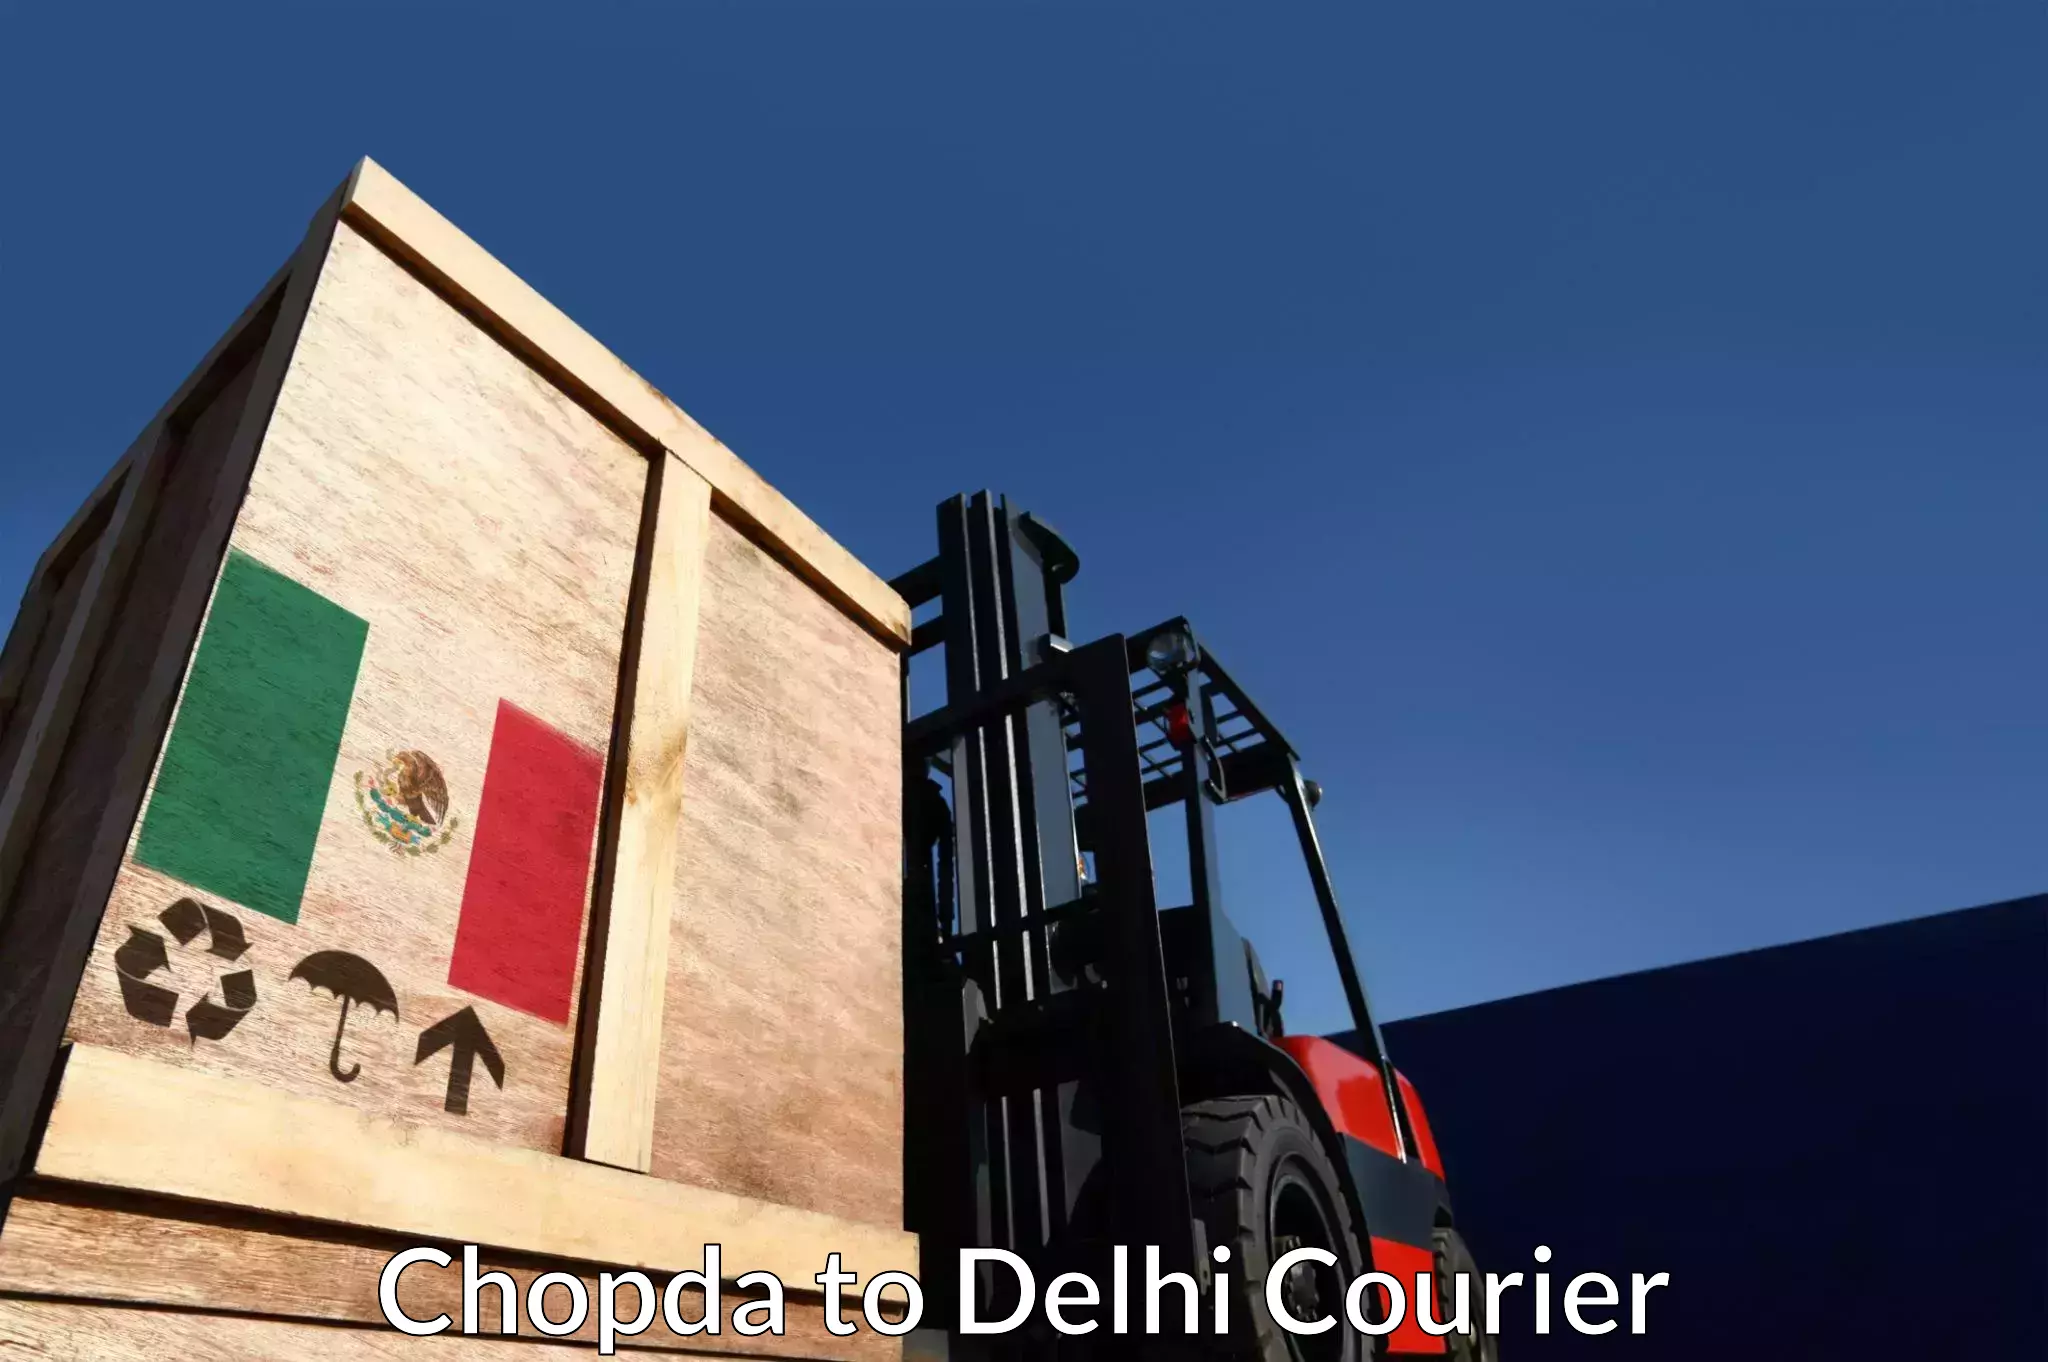 Express shipping Chopda to Delhi